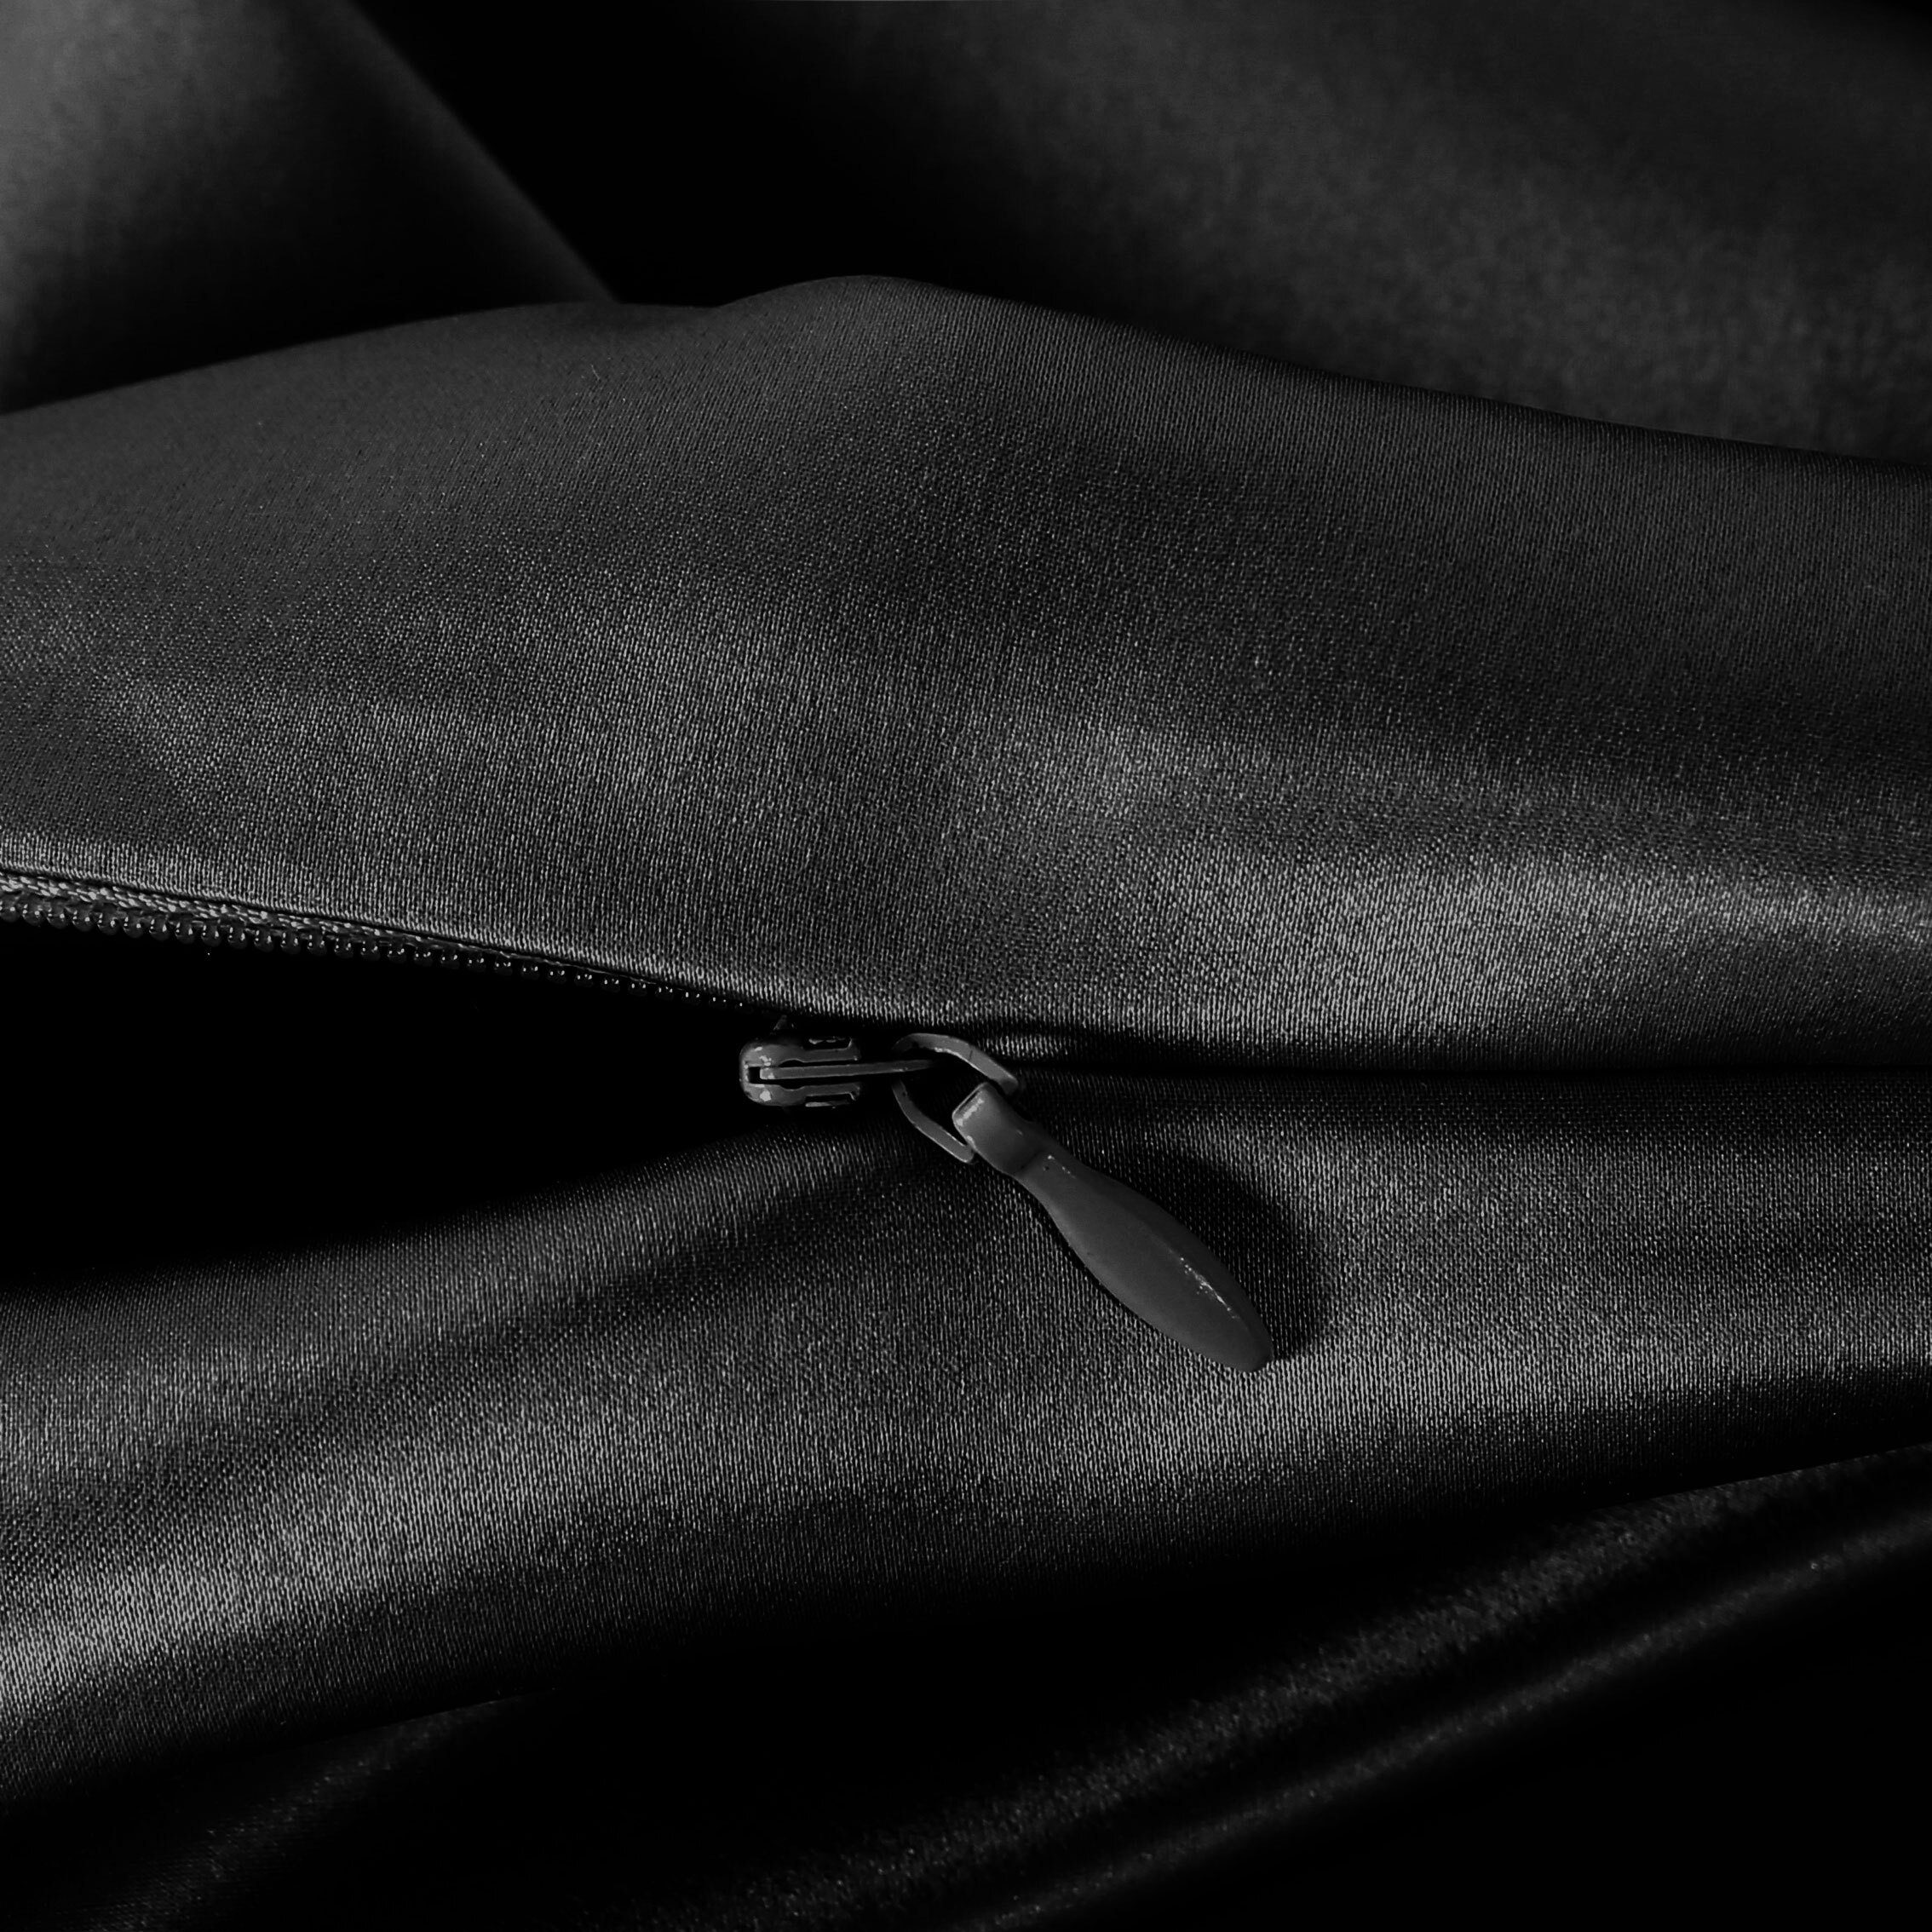 SLEEP seidenkissenbezug AILORIA BEAUTY + (50X70) schwarz maske, SET Kissenbezüge